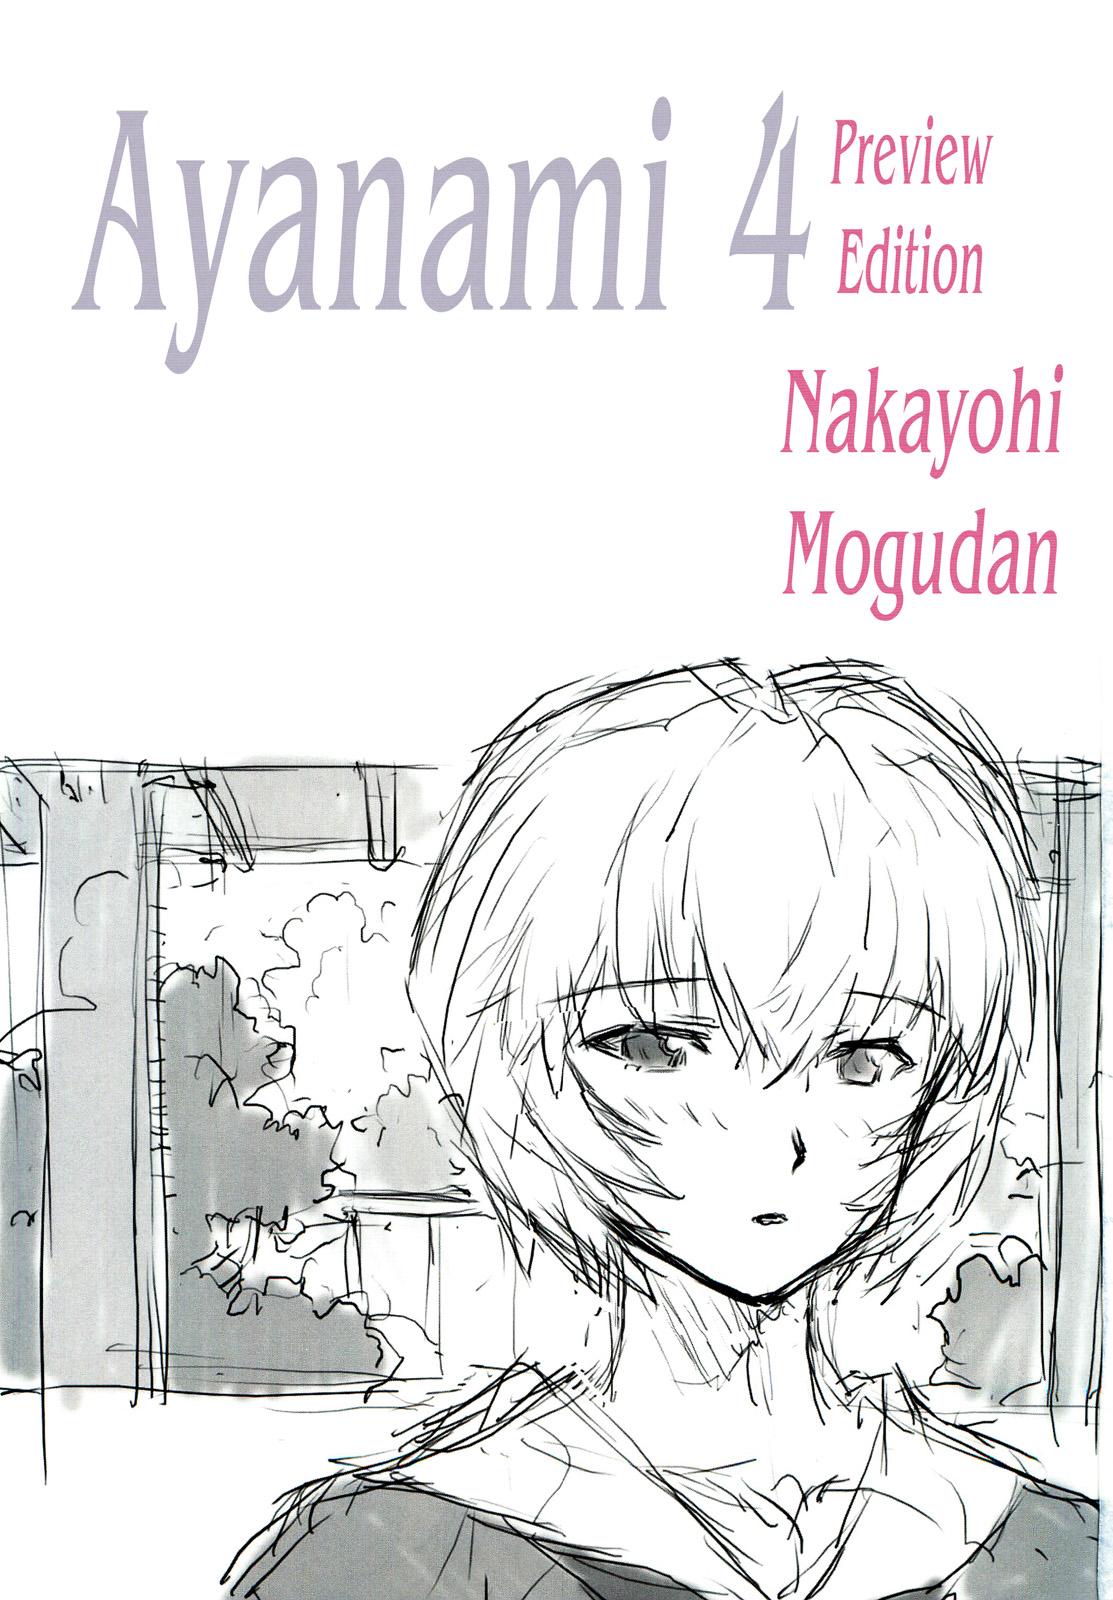 Pure 18 Ayanami Dai 4 Kai Pure Han | Ayanami 4 Preview Edition - Neon genesis evangelion Voyeur - Page 3